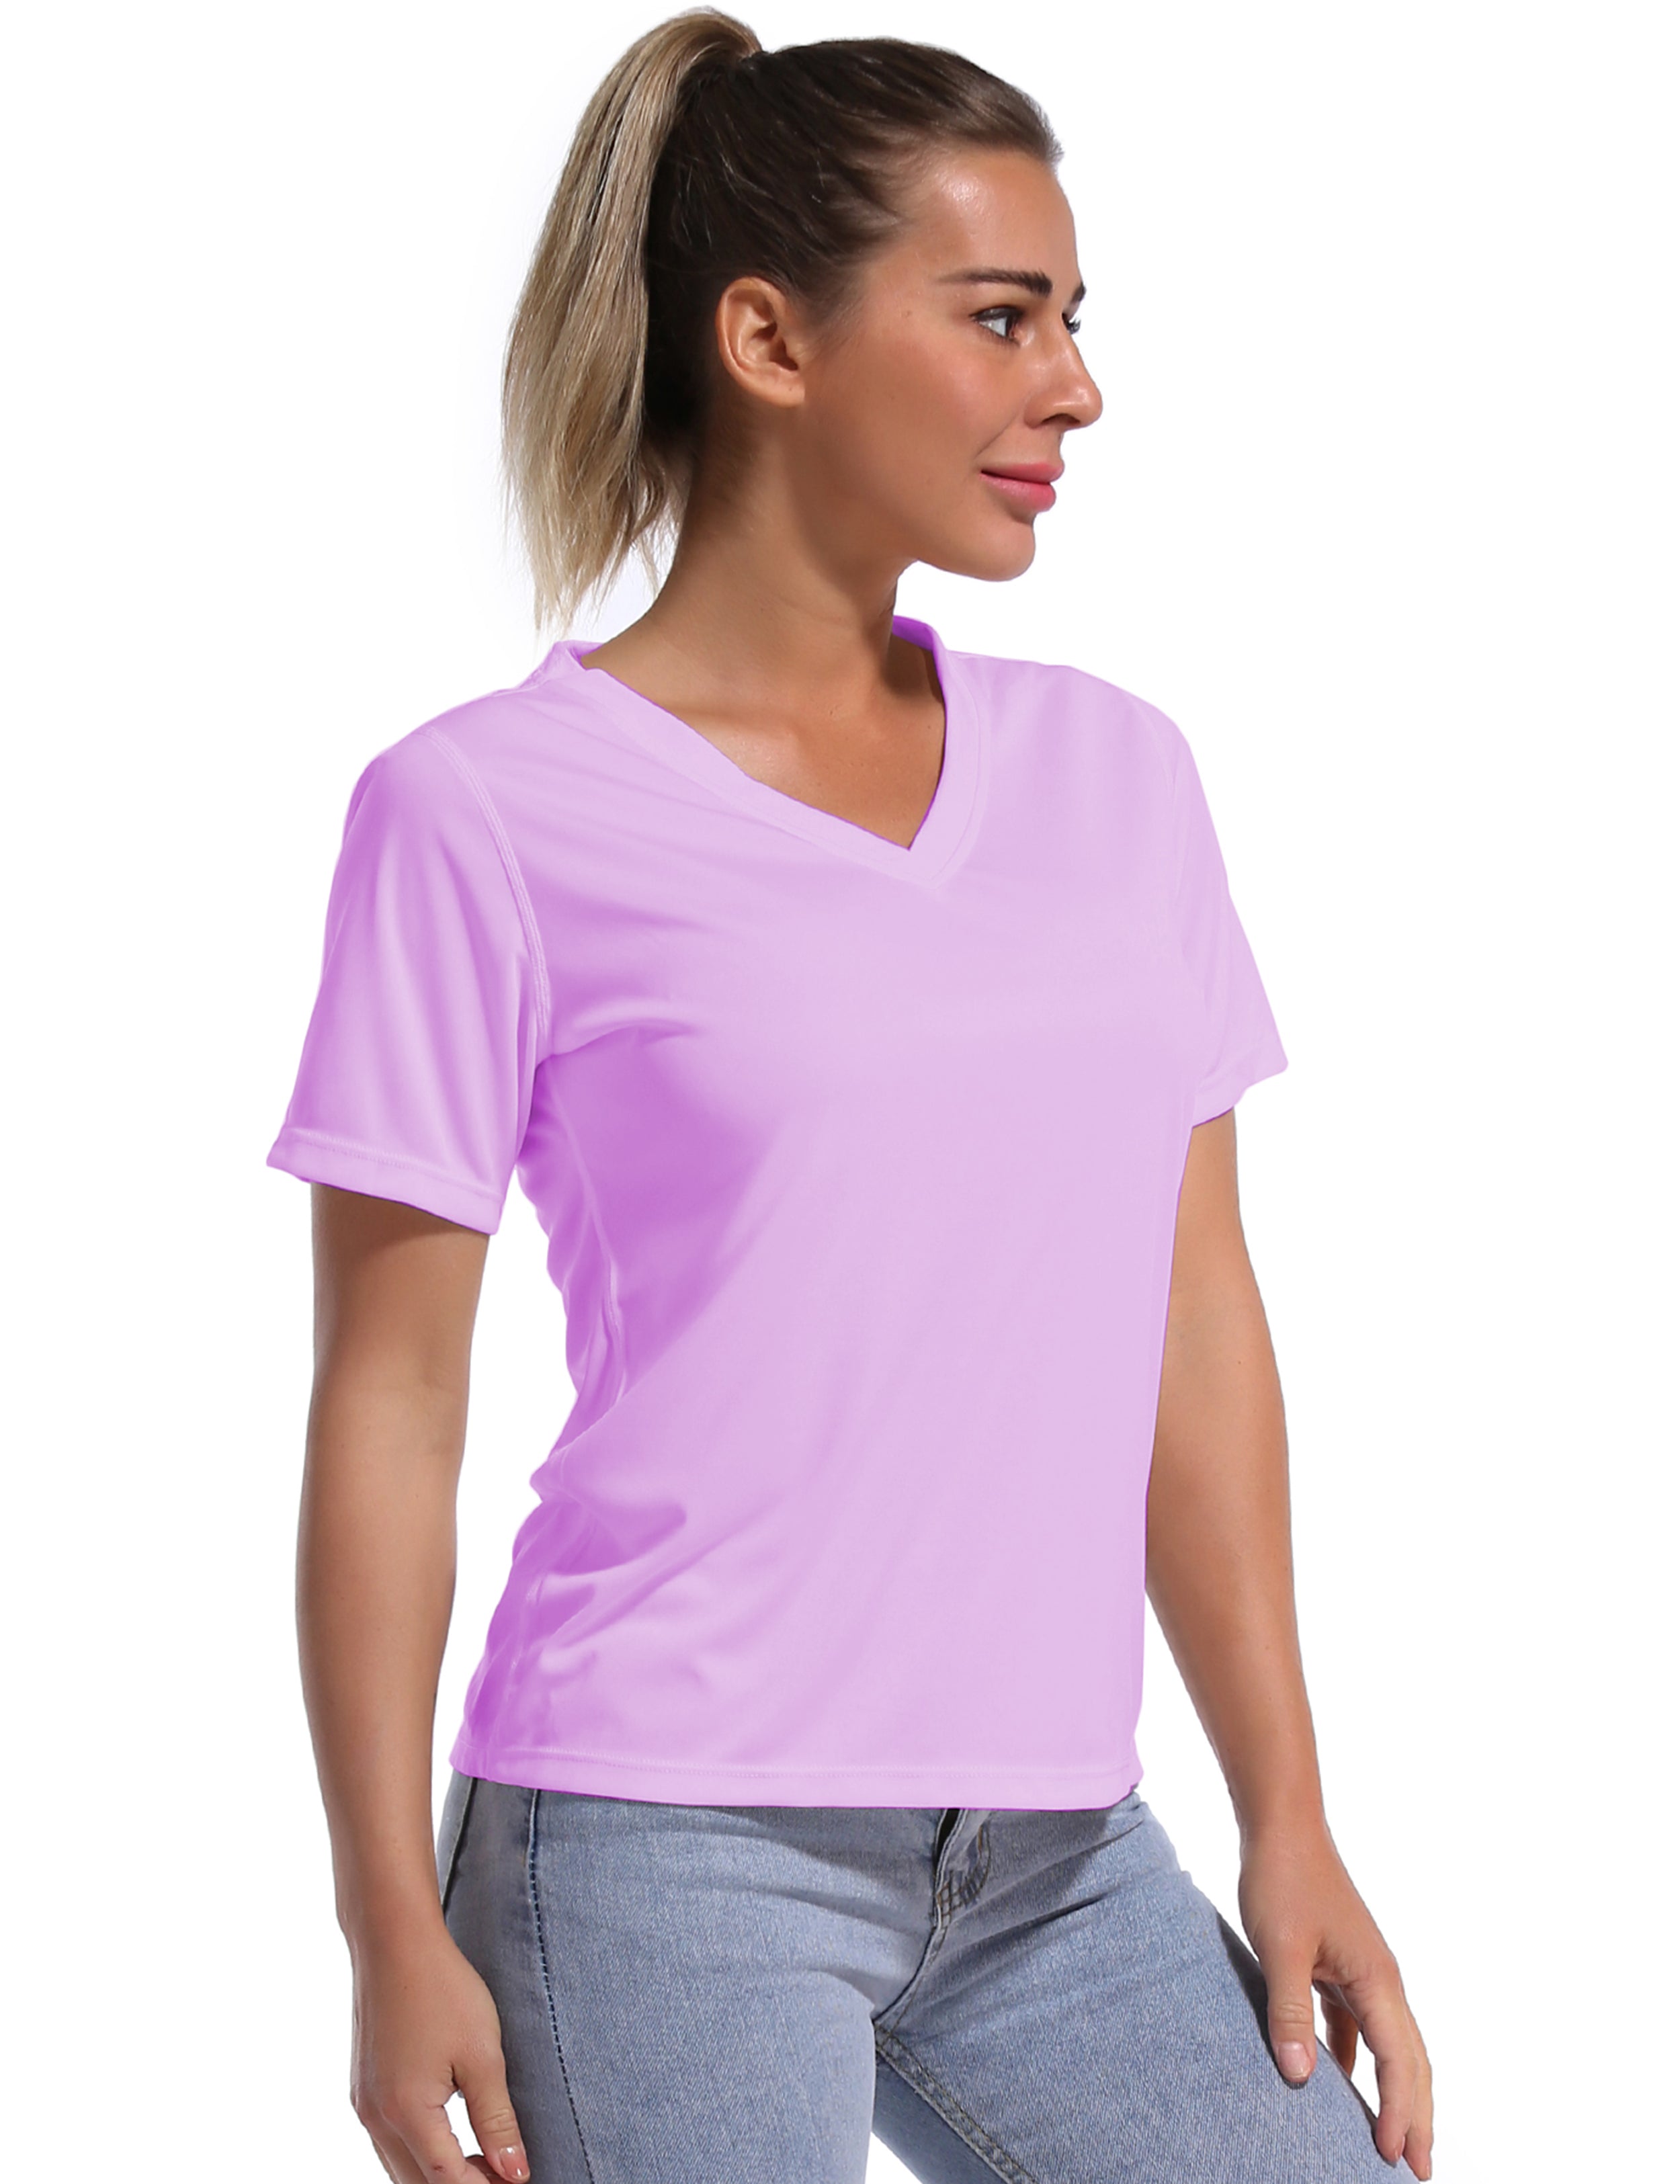 V-Neck Short Sleeve Athletic Shirts purple_yoga